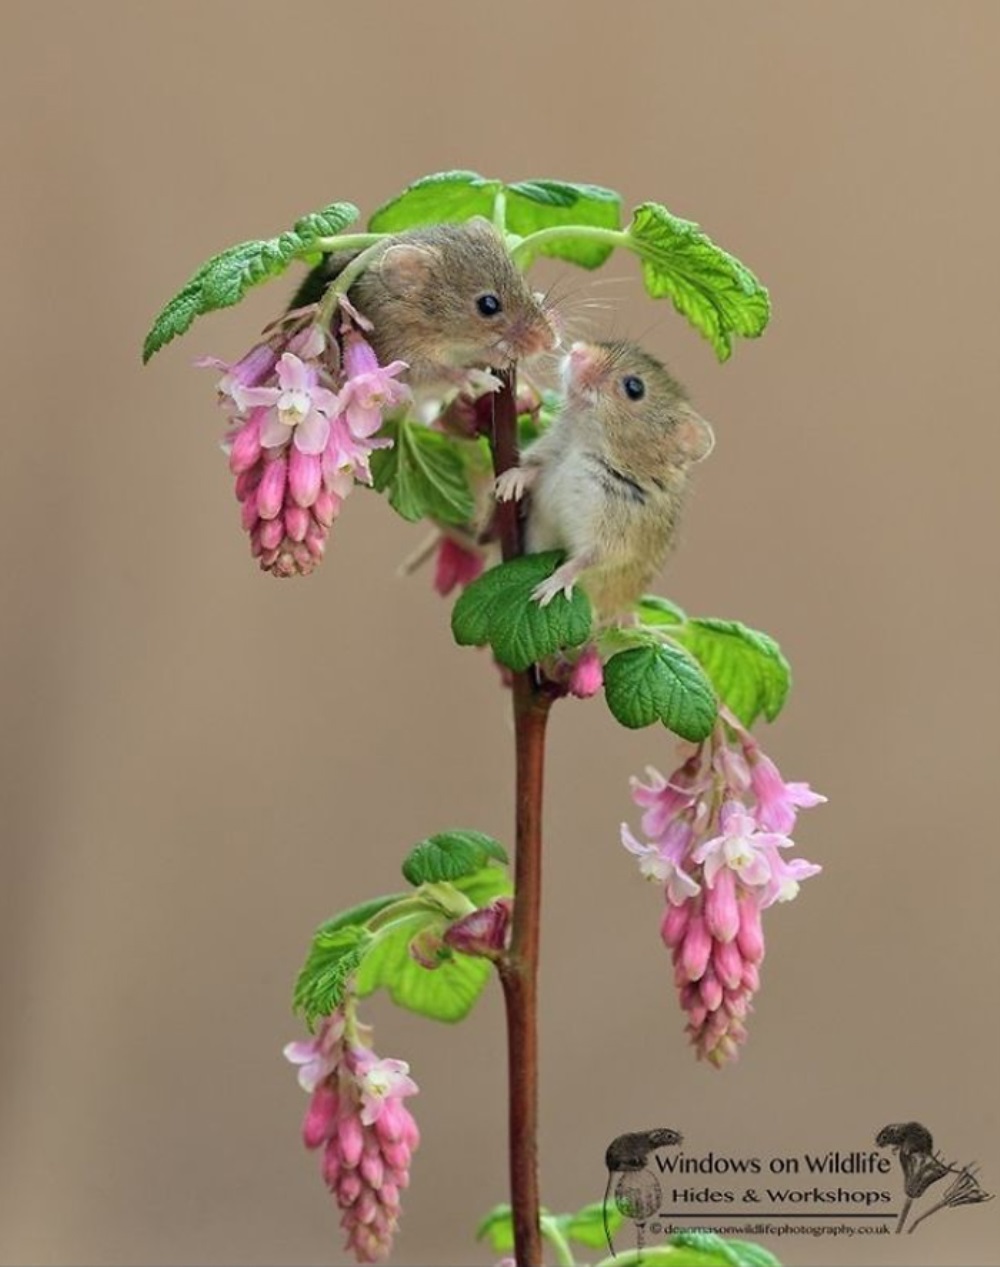 Mysz siedzi na kwiacie